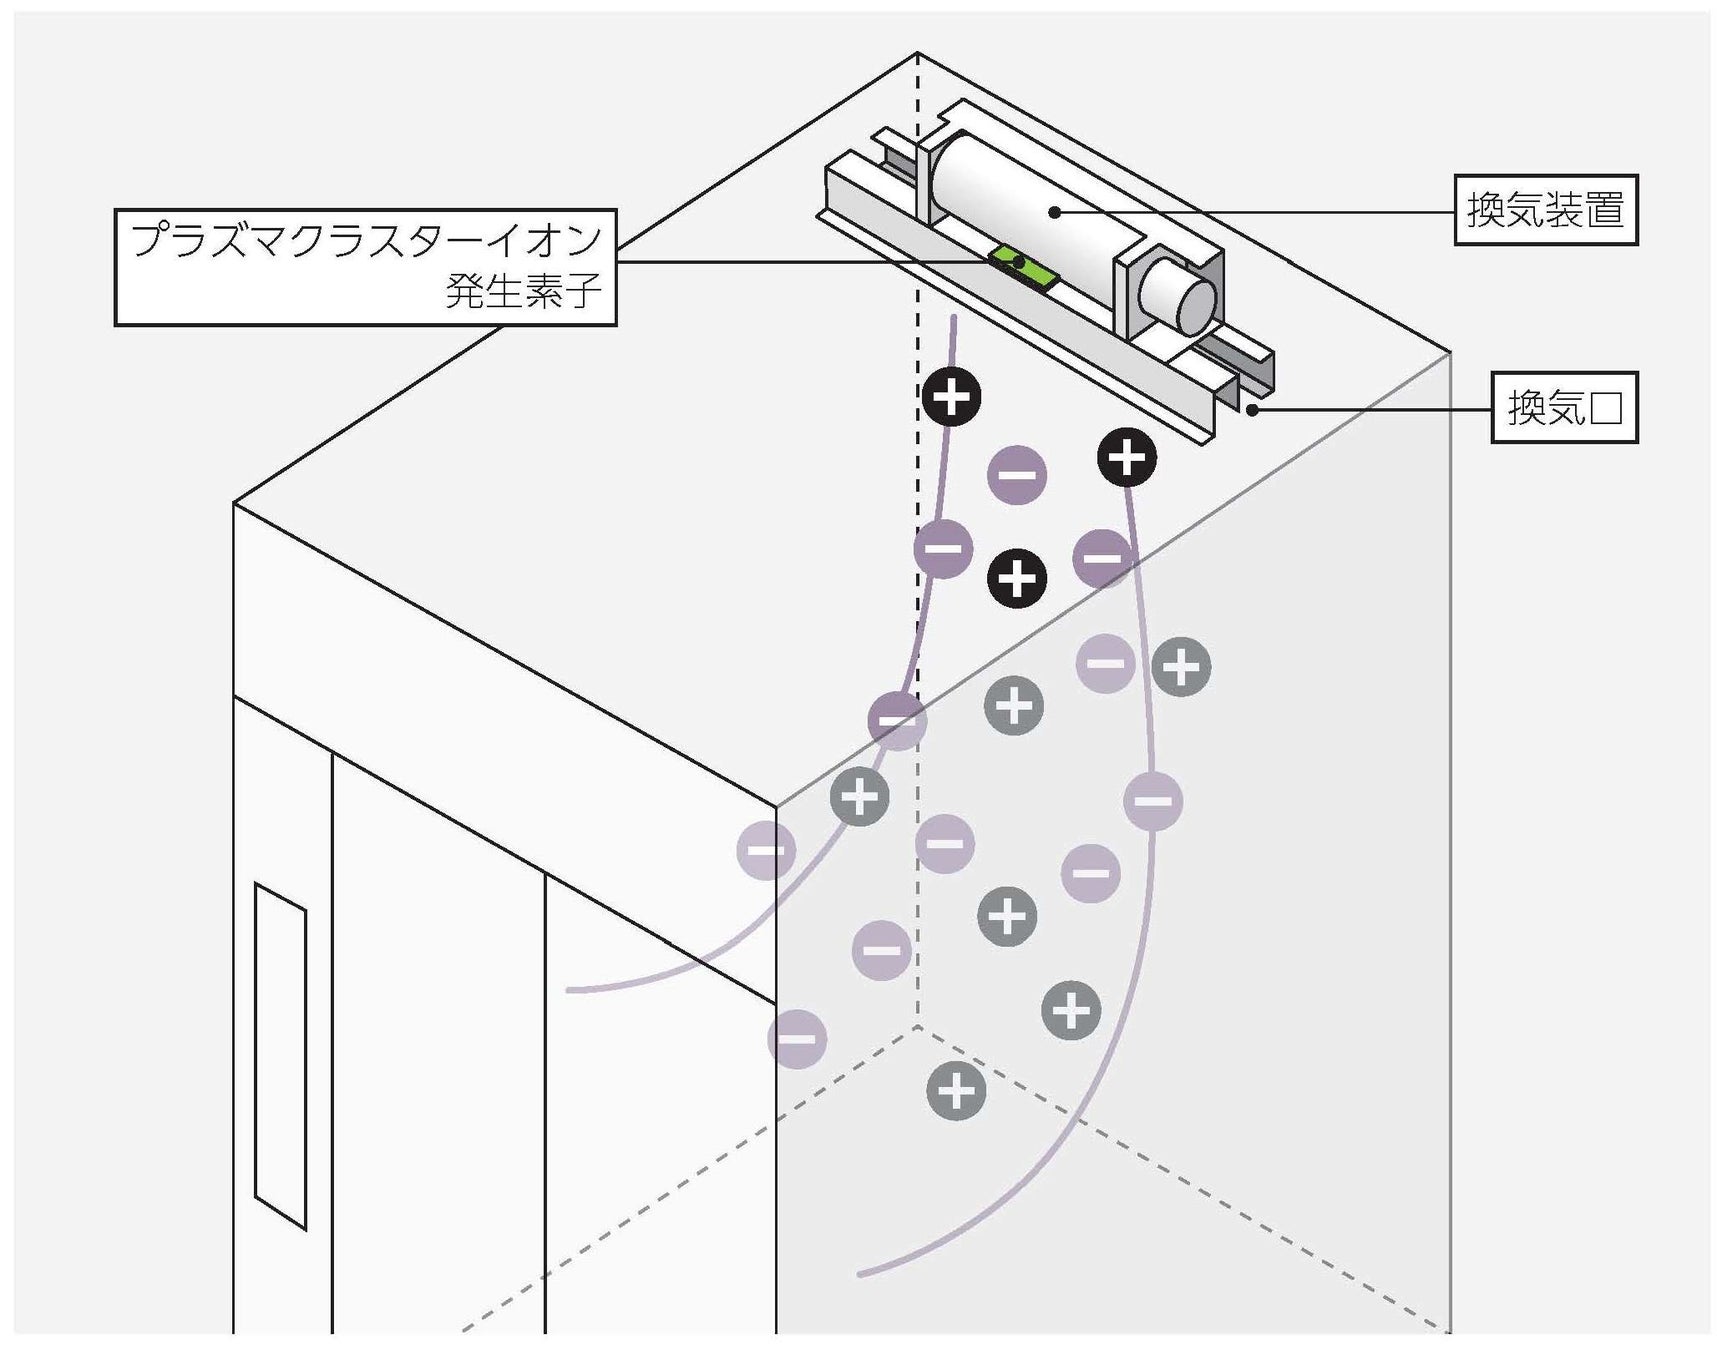 エレベータ空調システムの総称を「エアクレア」に決定のサブ画像3_イオンフルのイメージ